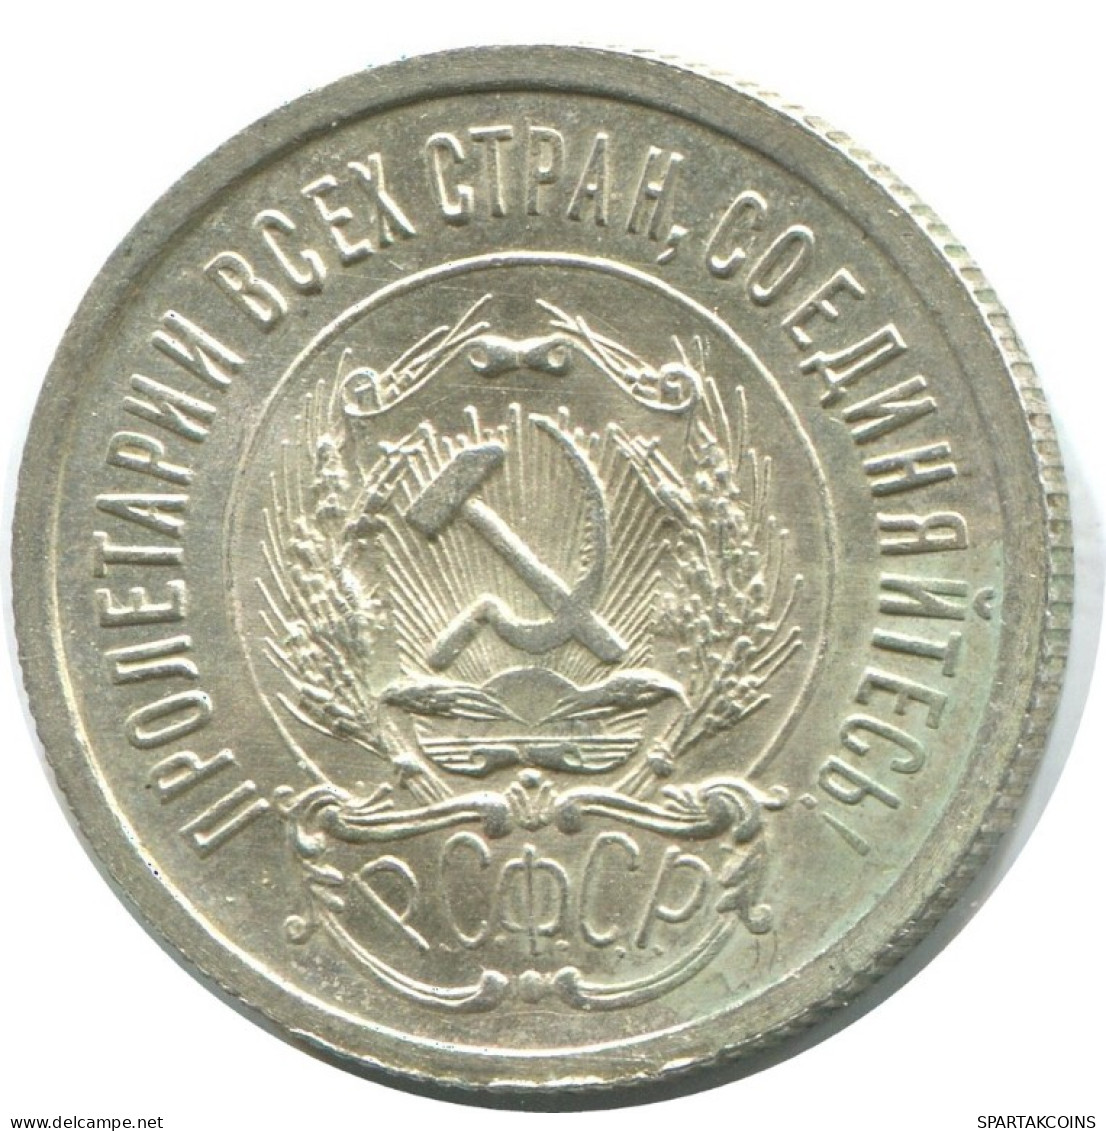 20 KOPEKS 1923 RUSSIA RSFSR SILVER Coin HIGH GRADE #AF702.U.A - Rusland